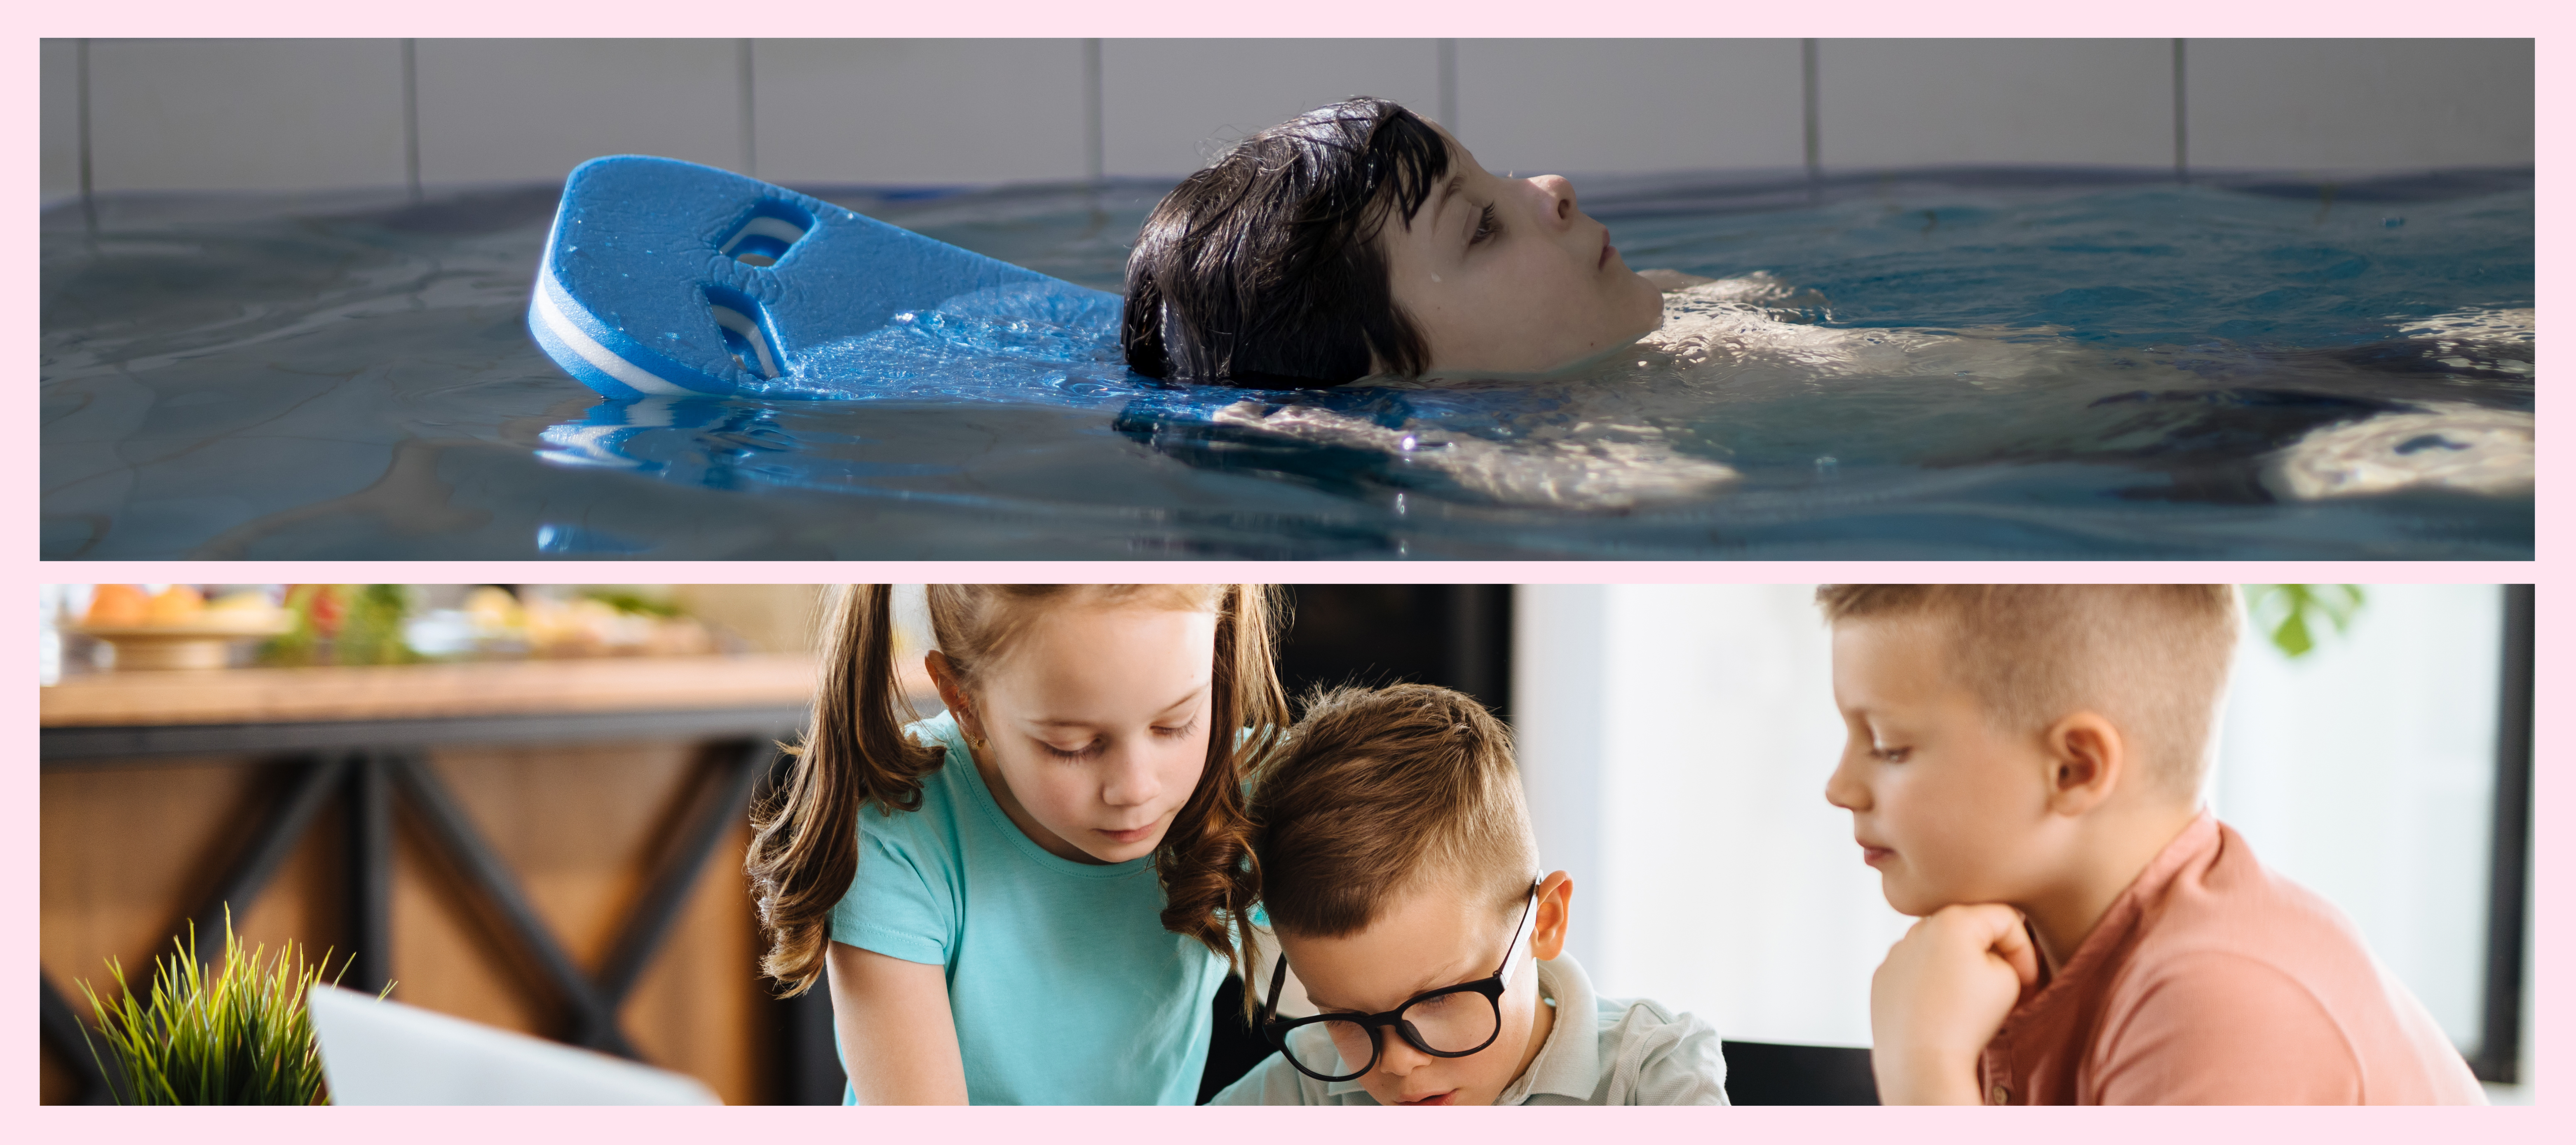 Collage mit zwei Bildern, oben ein Kind im Wasser und unten drei Kinder die lernen.